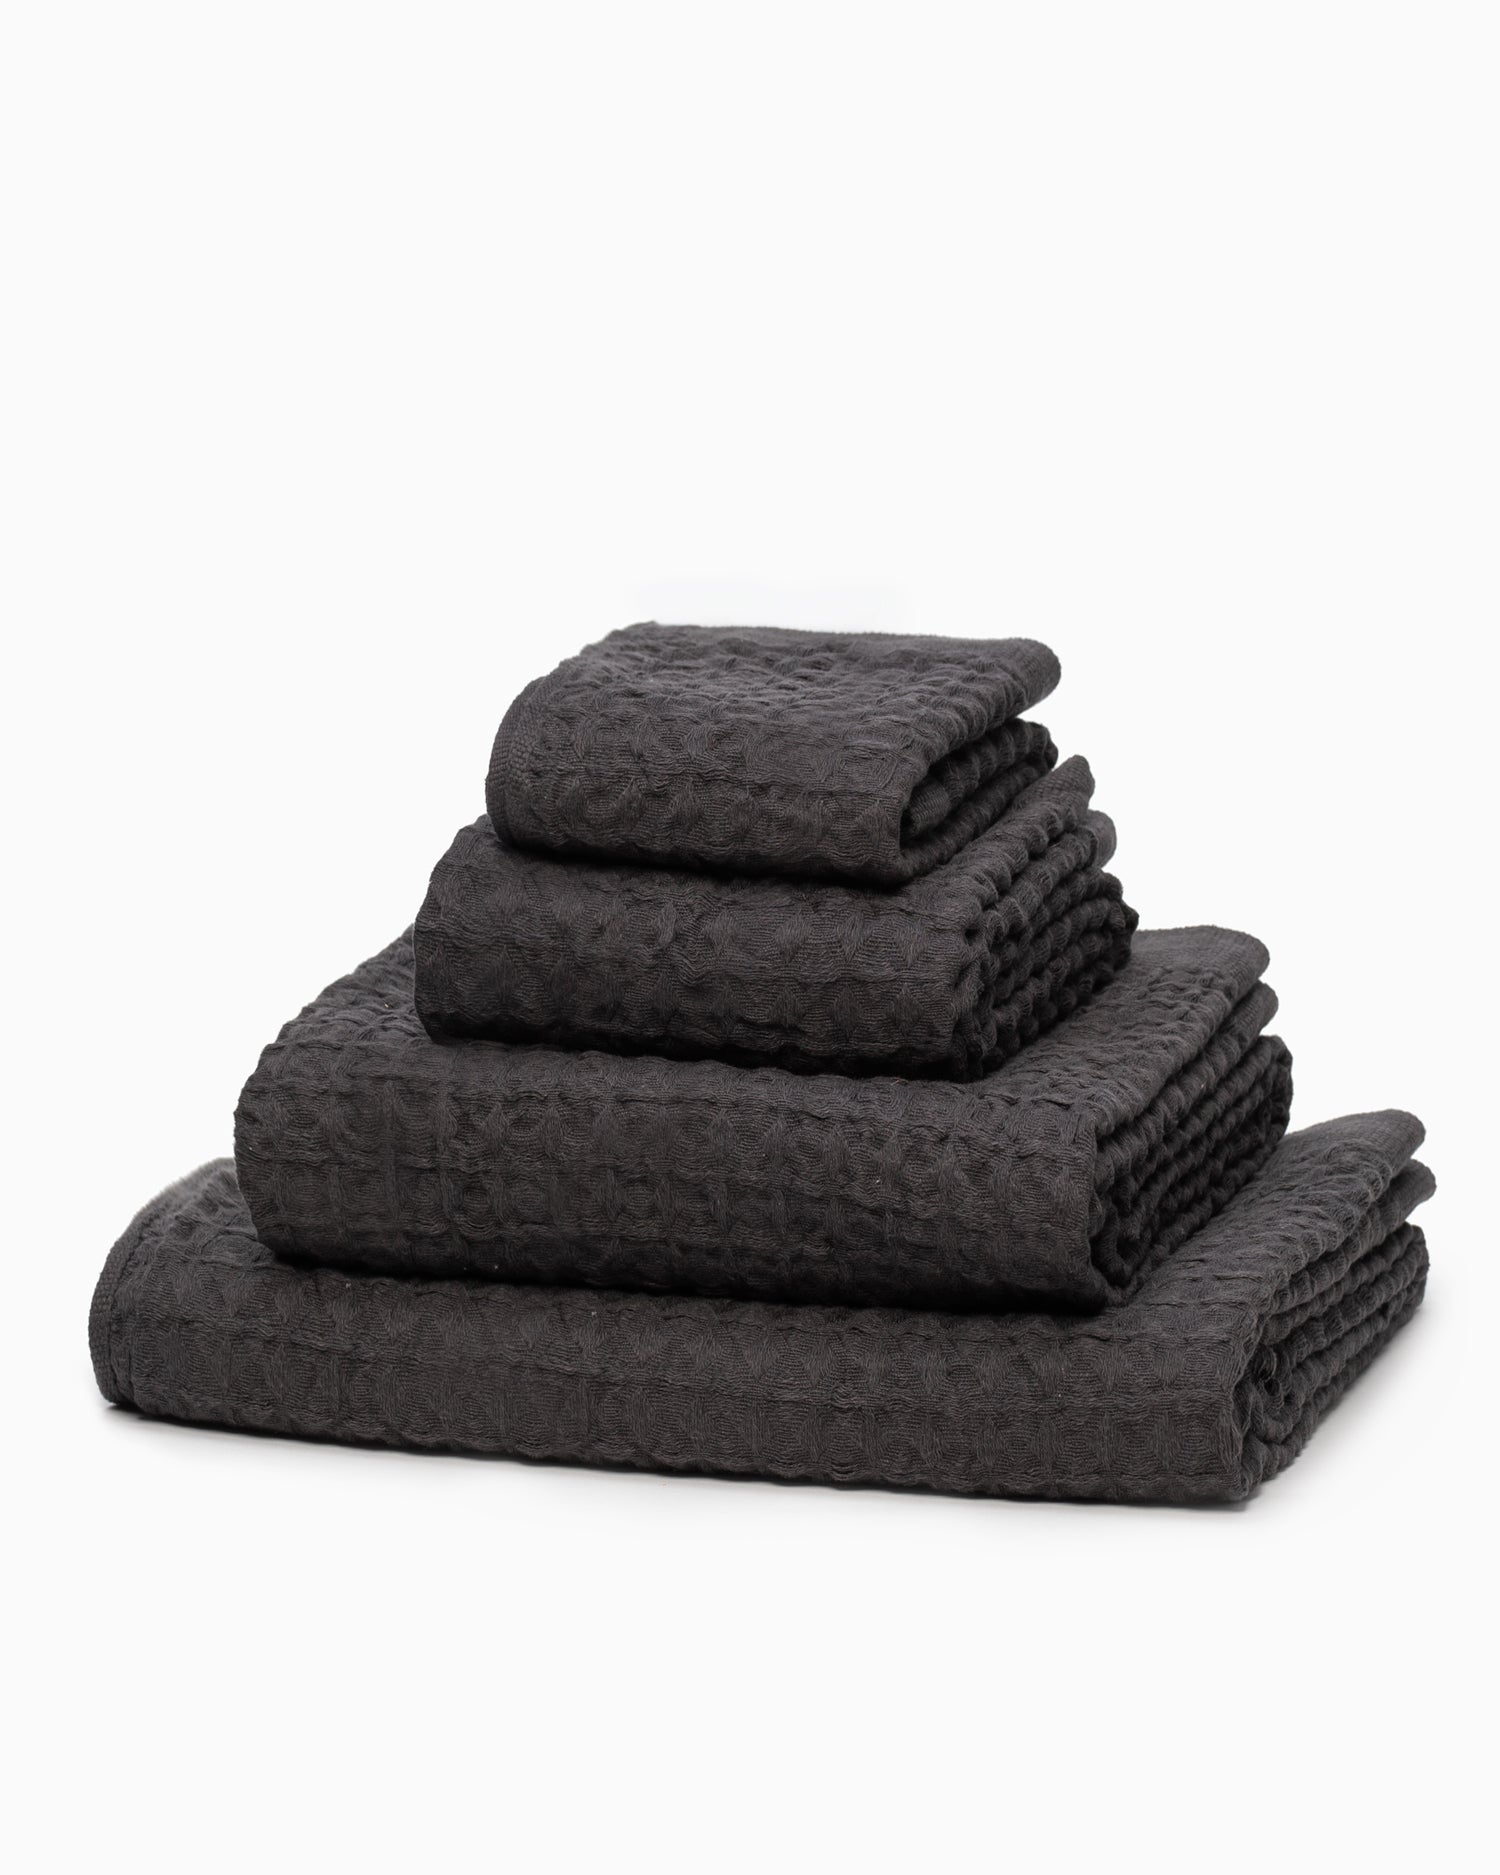 Lattice Linen Compact Bath Towel - Charcoal